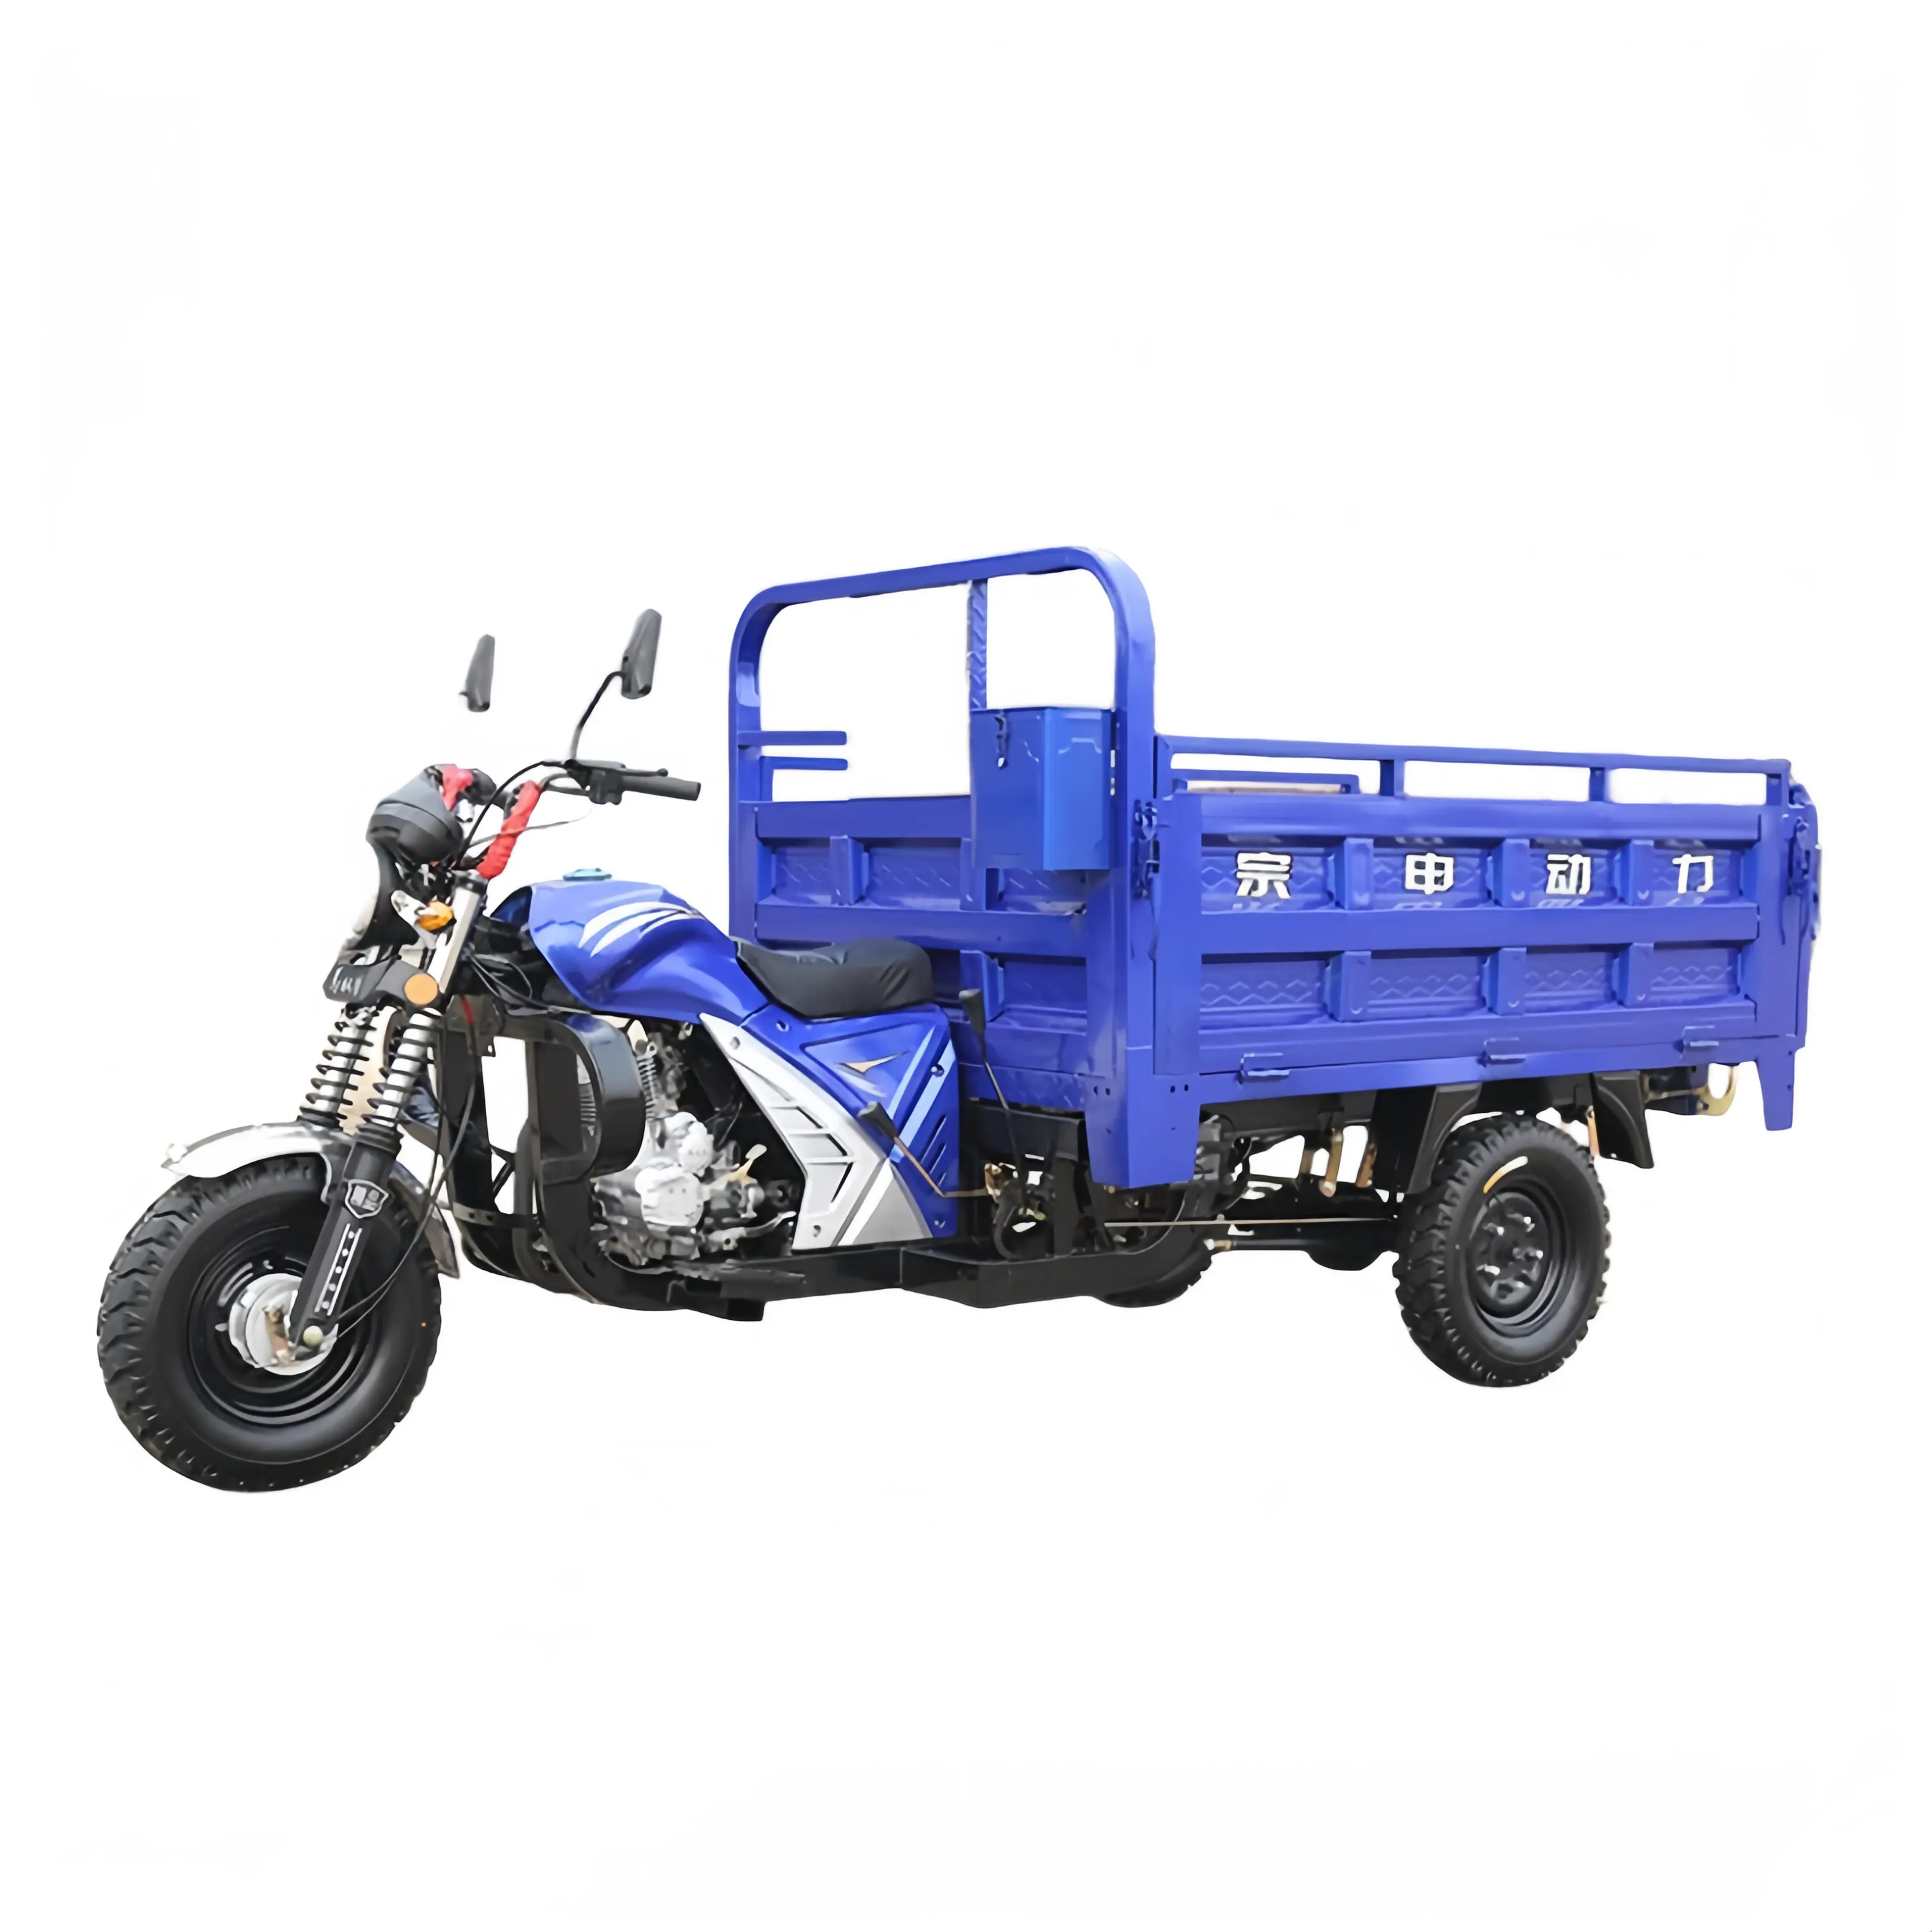 אופנועי תלת אופן ממונעים עם תא פתוח 150 סמ""ק למבוגרים